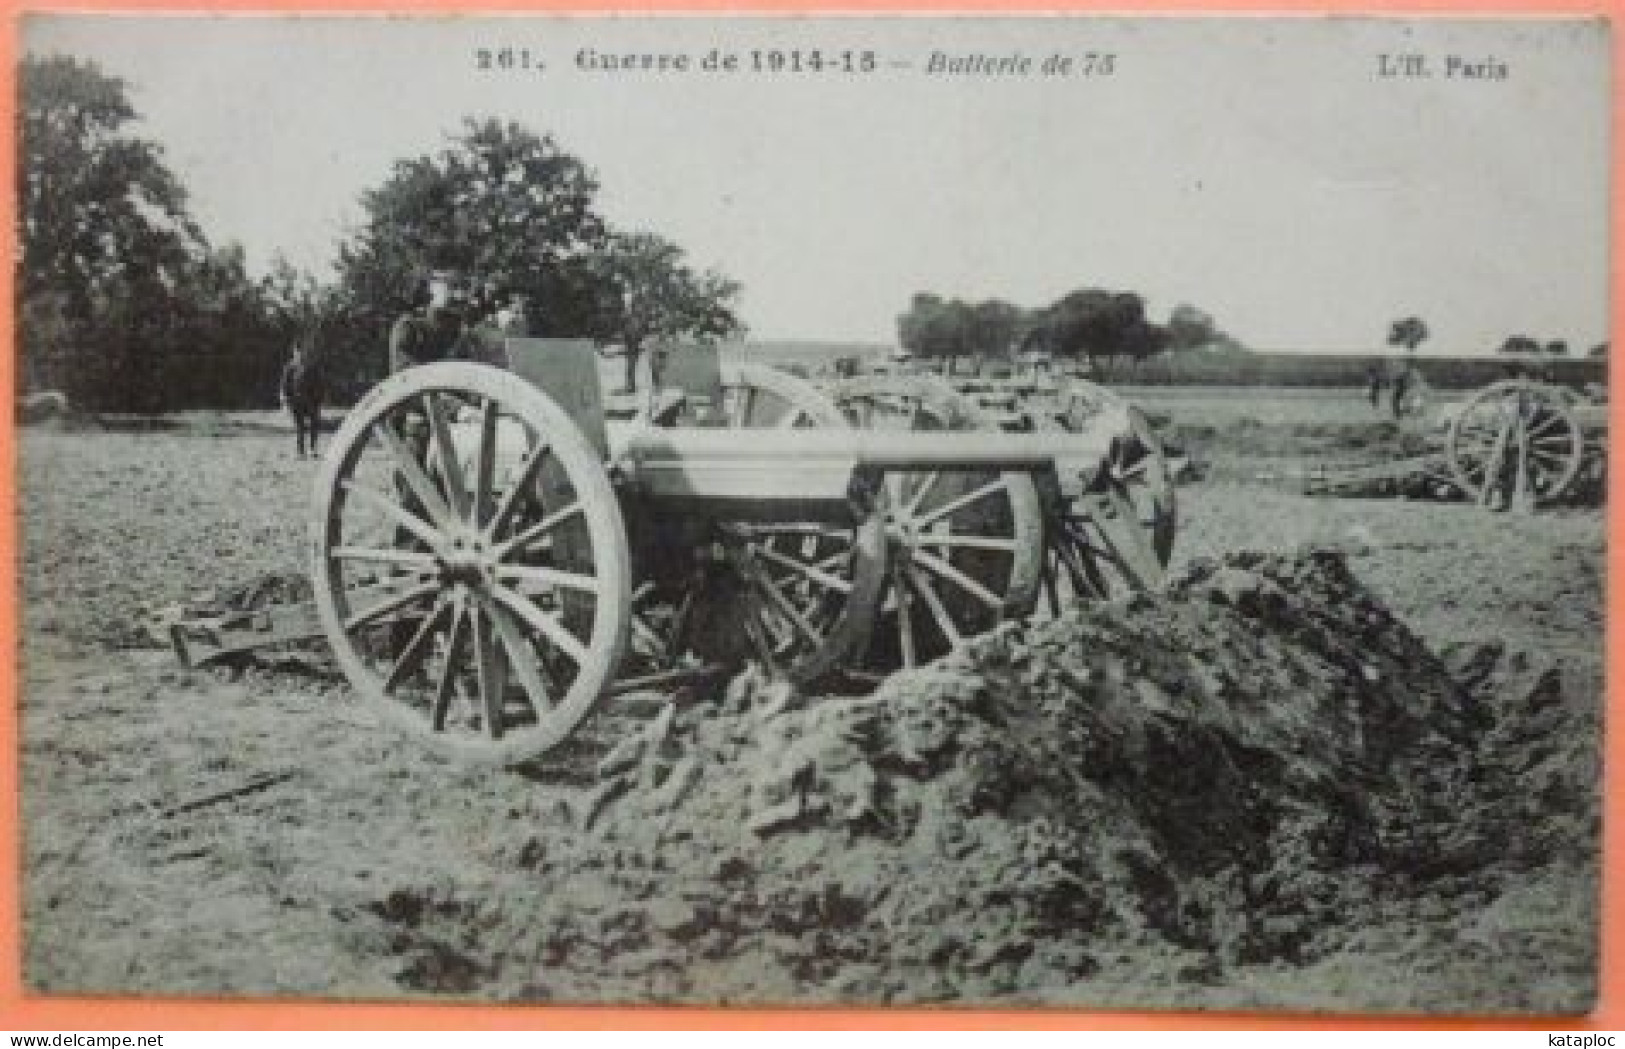 CARTE GUERRE DE 1914-15 - BATTERIE DE 75 -SCAN RECTO/VERSO-10 - Material